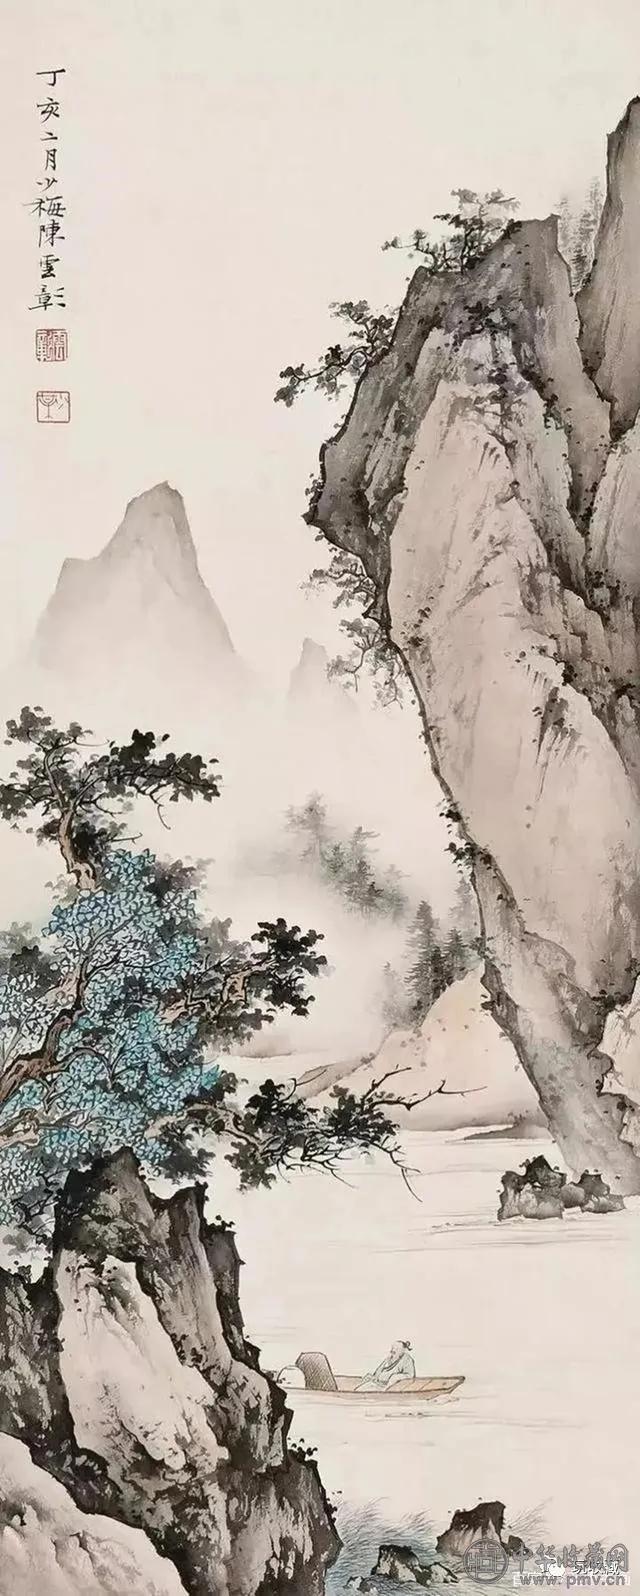 陈少梅一代宗师,清雅古朴的山水画蕴含道法自然天人合一